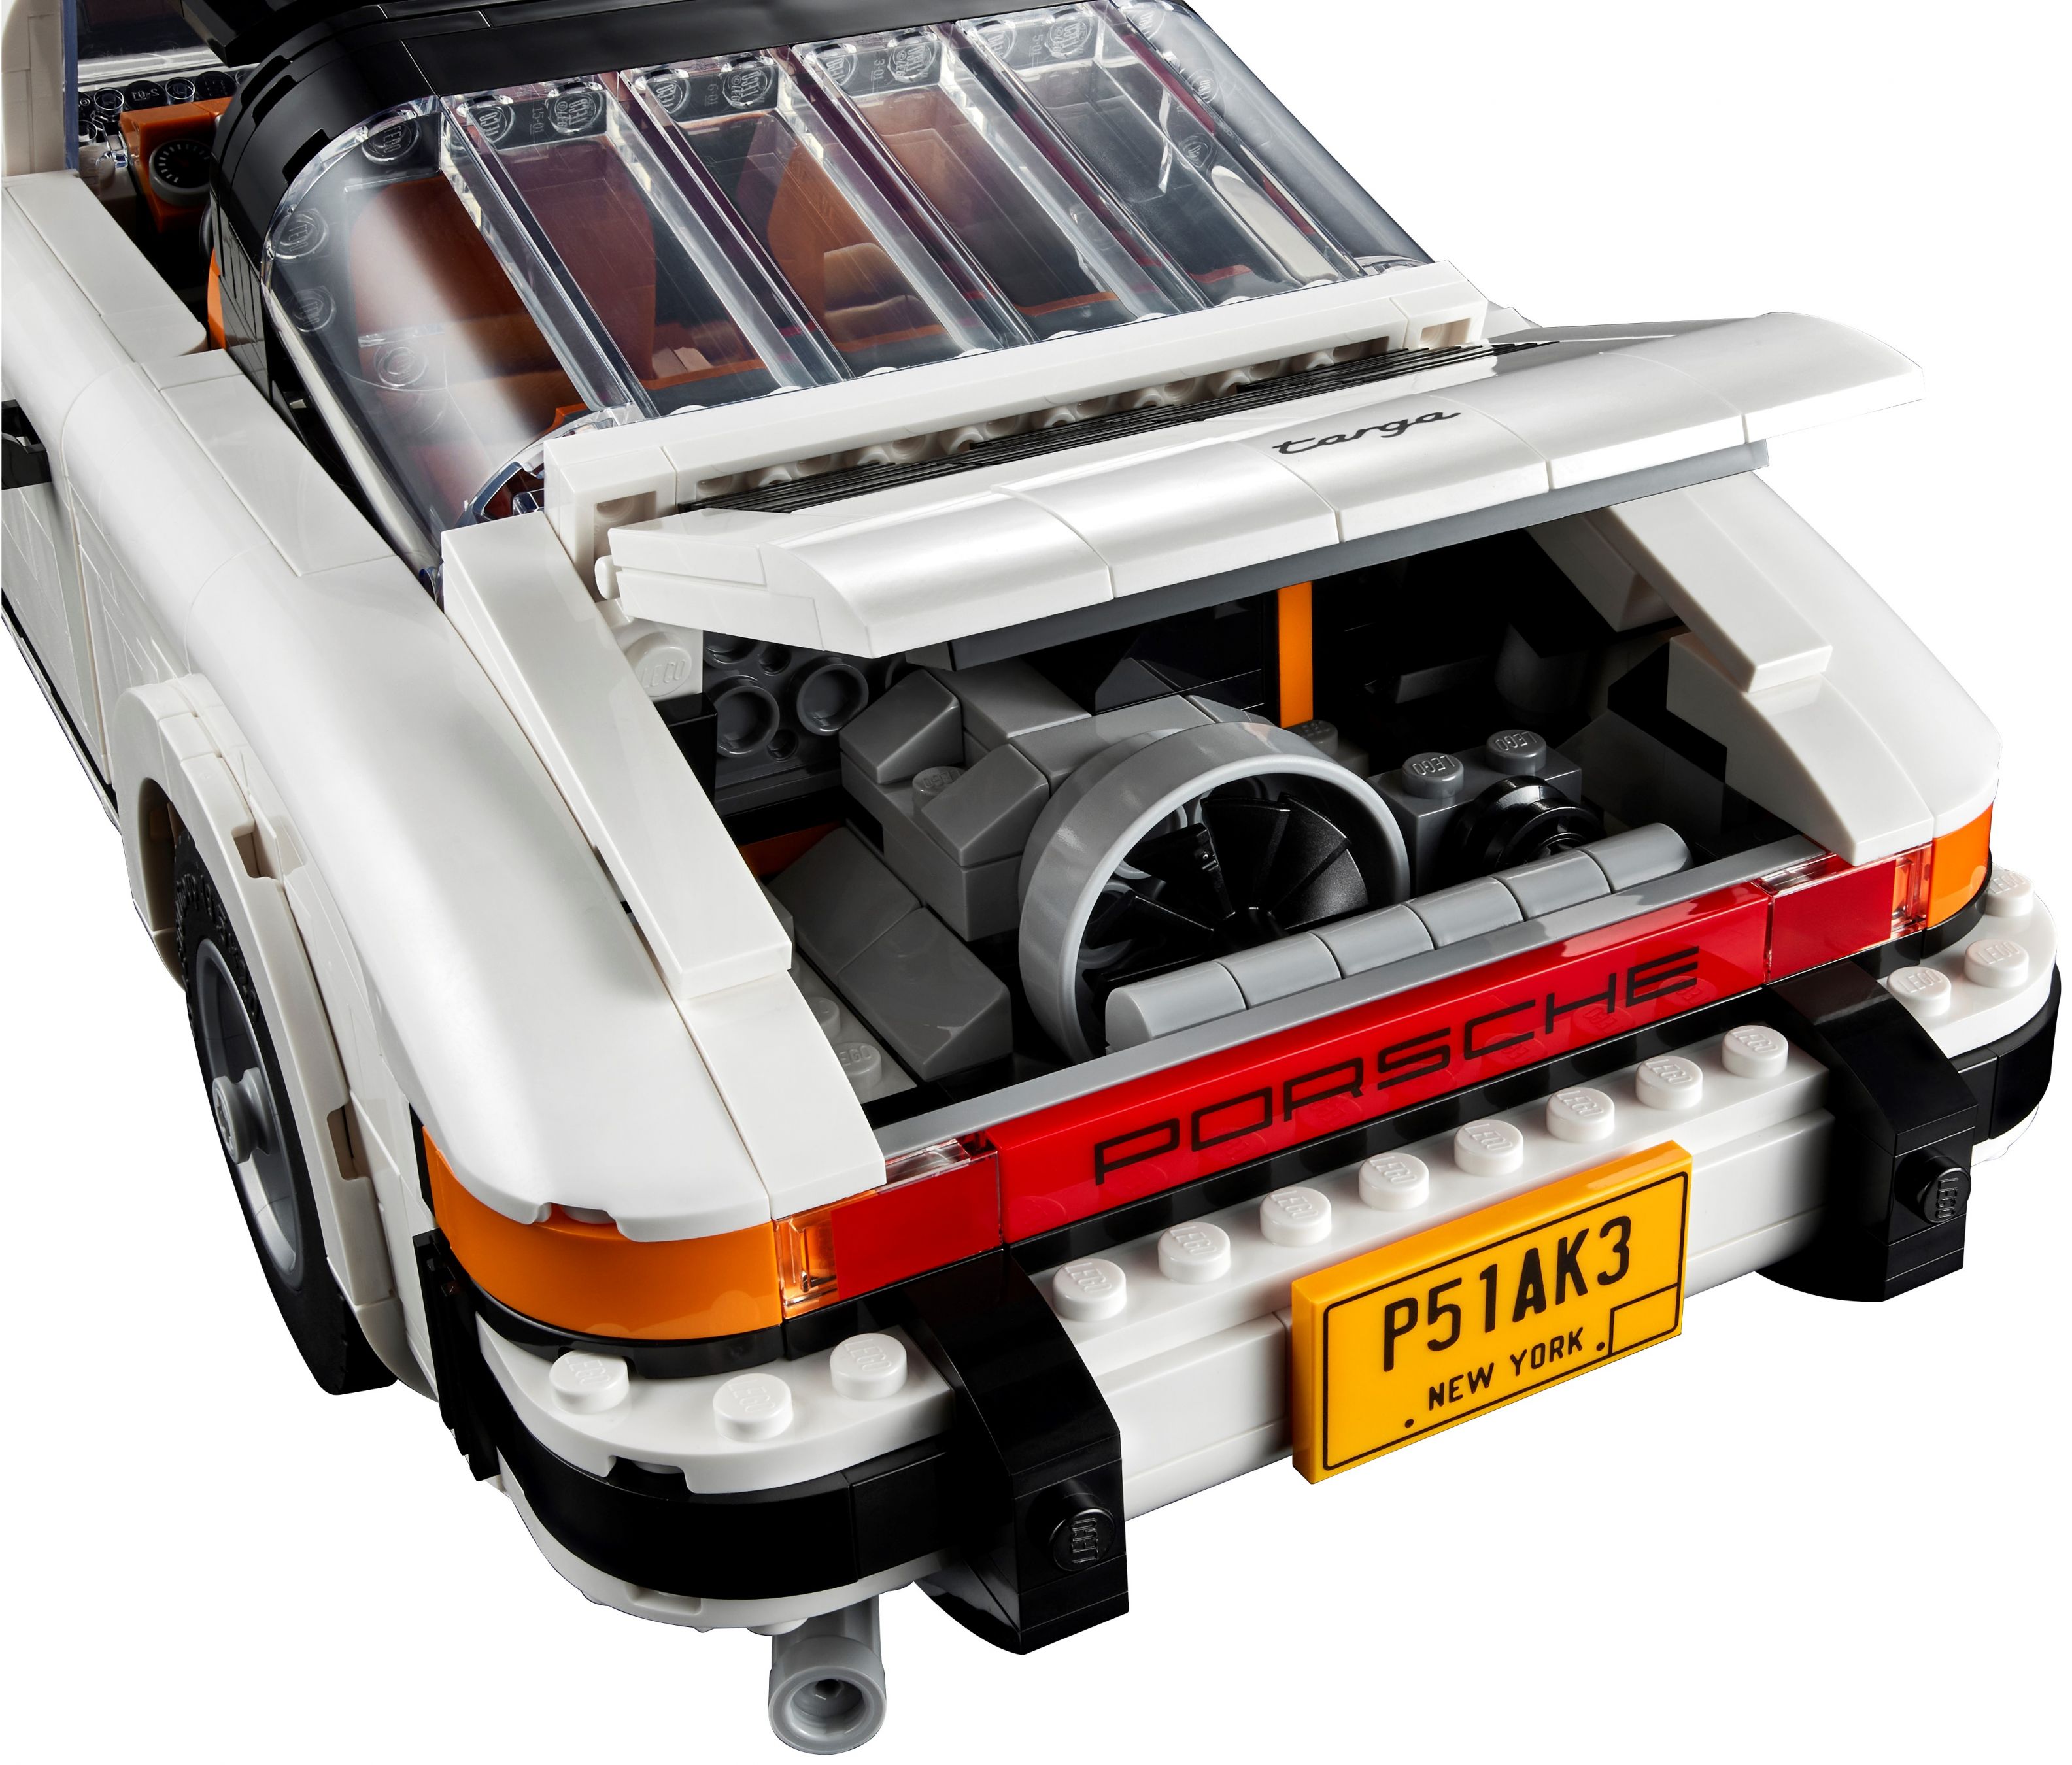 LEGO Advanced Models 10295 Porsche 911 LEGO_10295_alt5.jpg